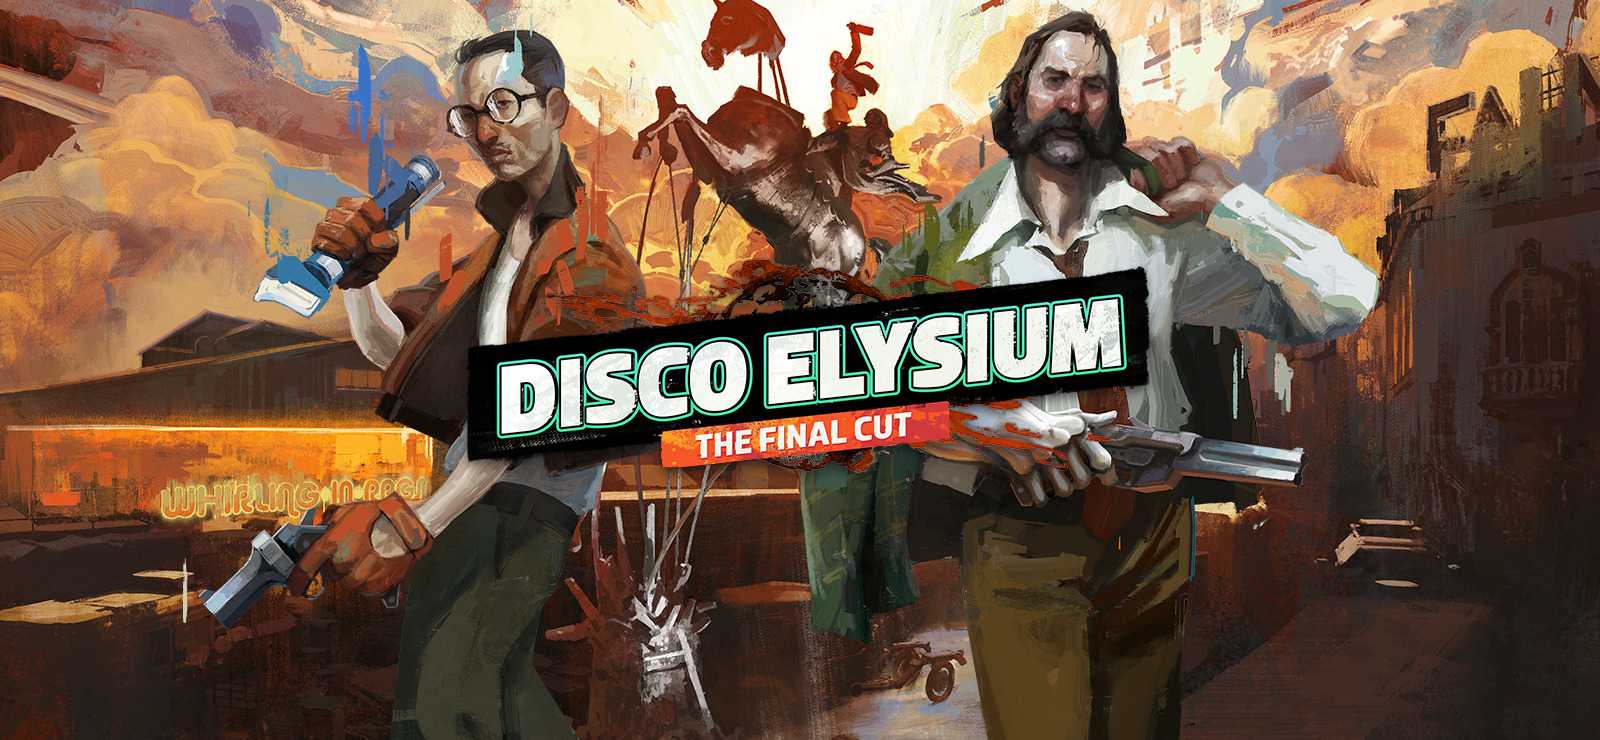 Disco elysium: the final cut — политические взгляды и как работают квесты vision